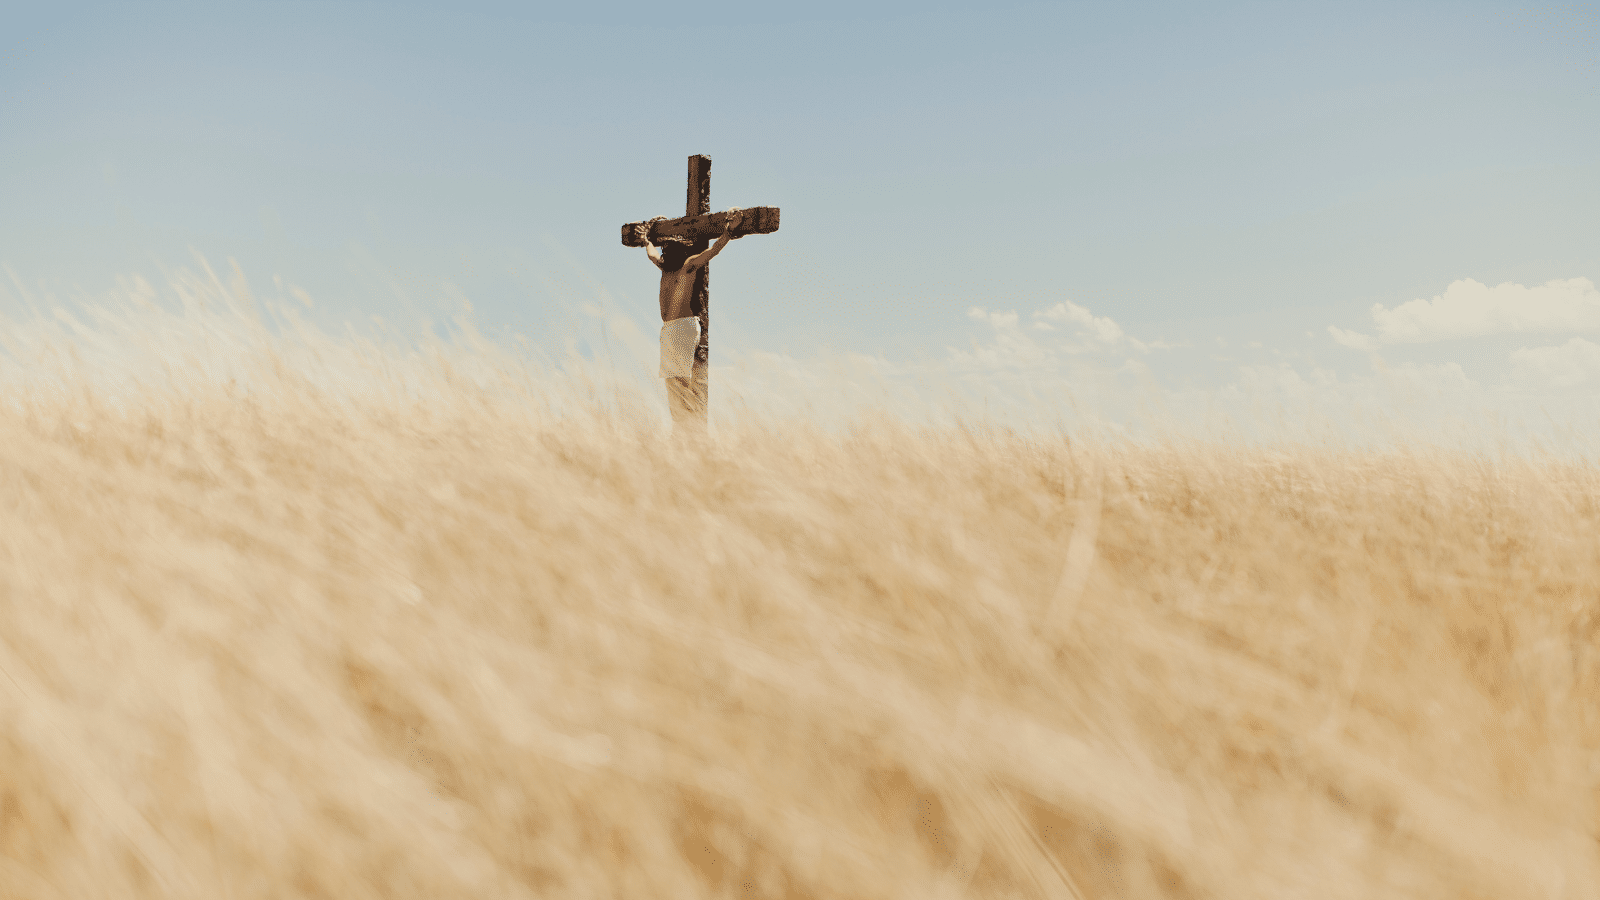 A man depicting Jesus on the cross in a field.